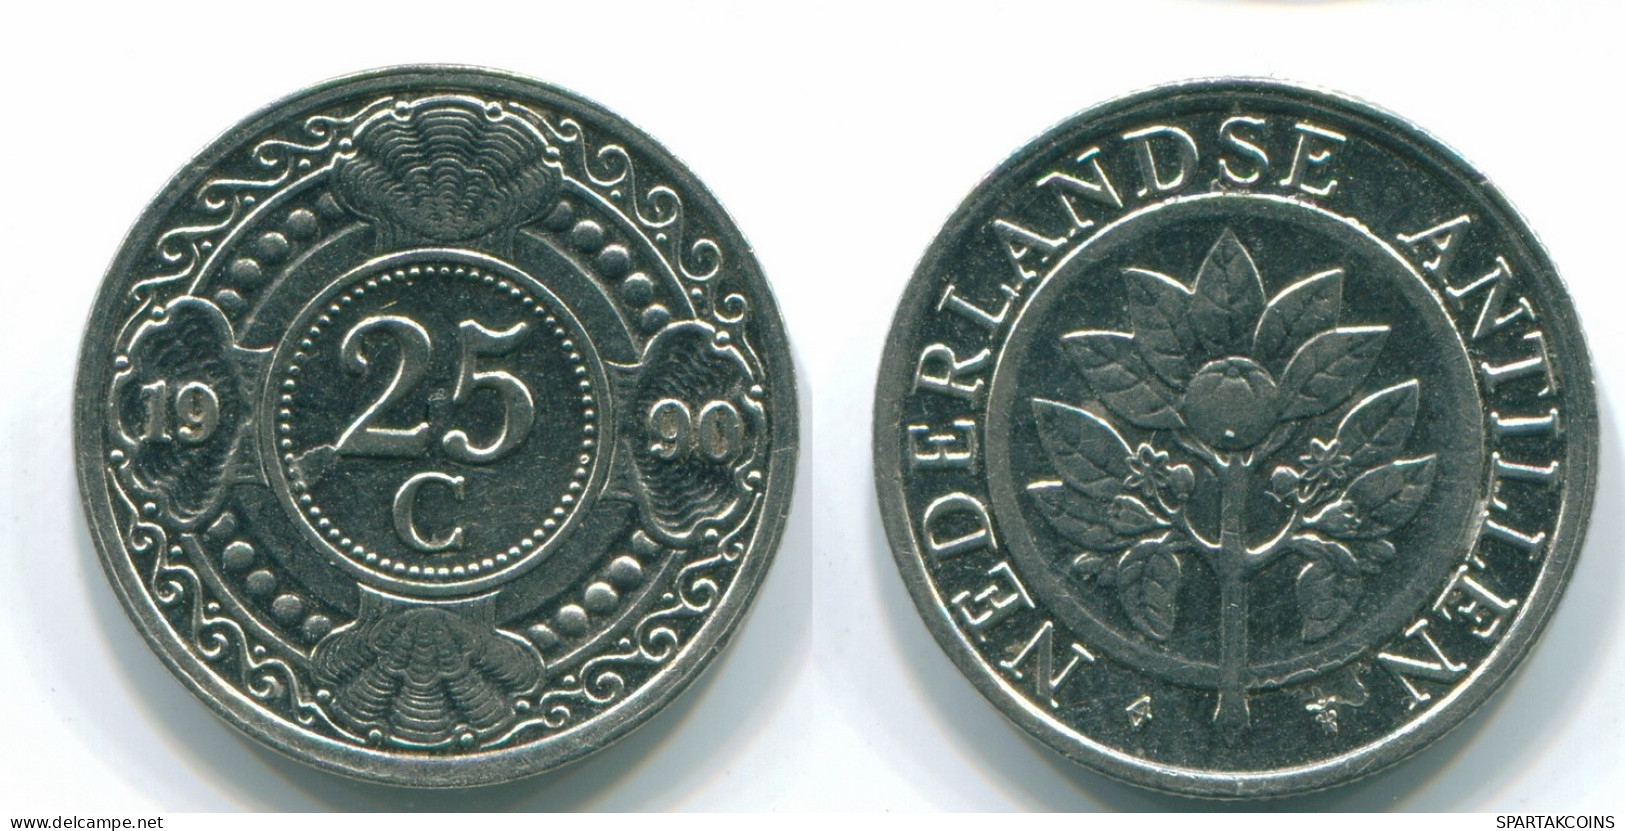 25 CENTS 1990 NIEDERLÄNDISCHE ANTILLEN Nickel Koloniale Münze #S11255.D.A - Niederländische Antillen